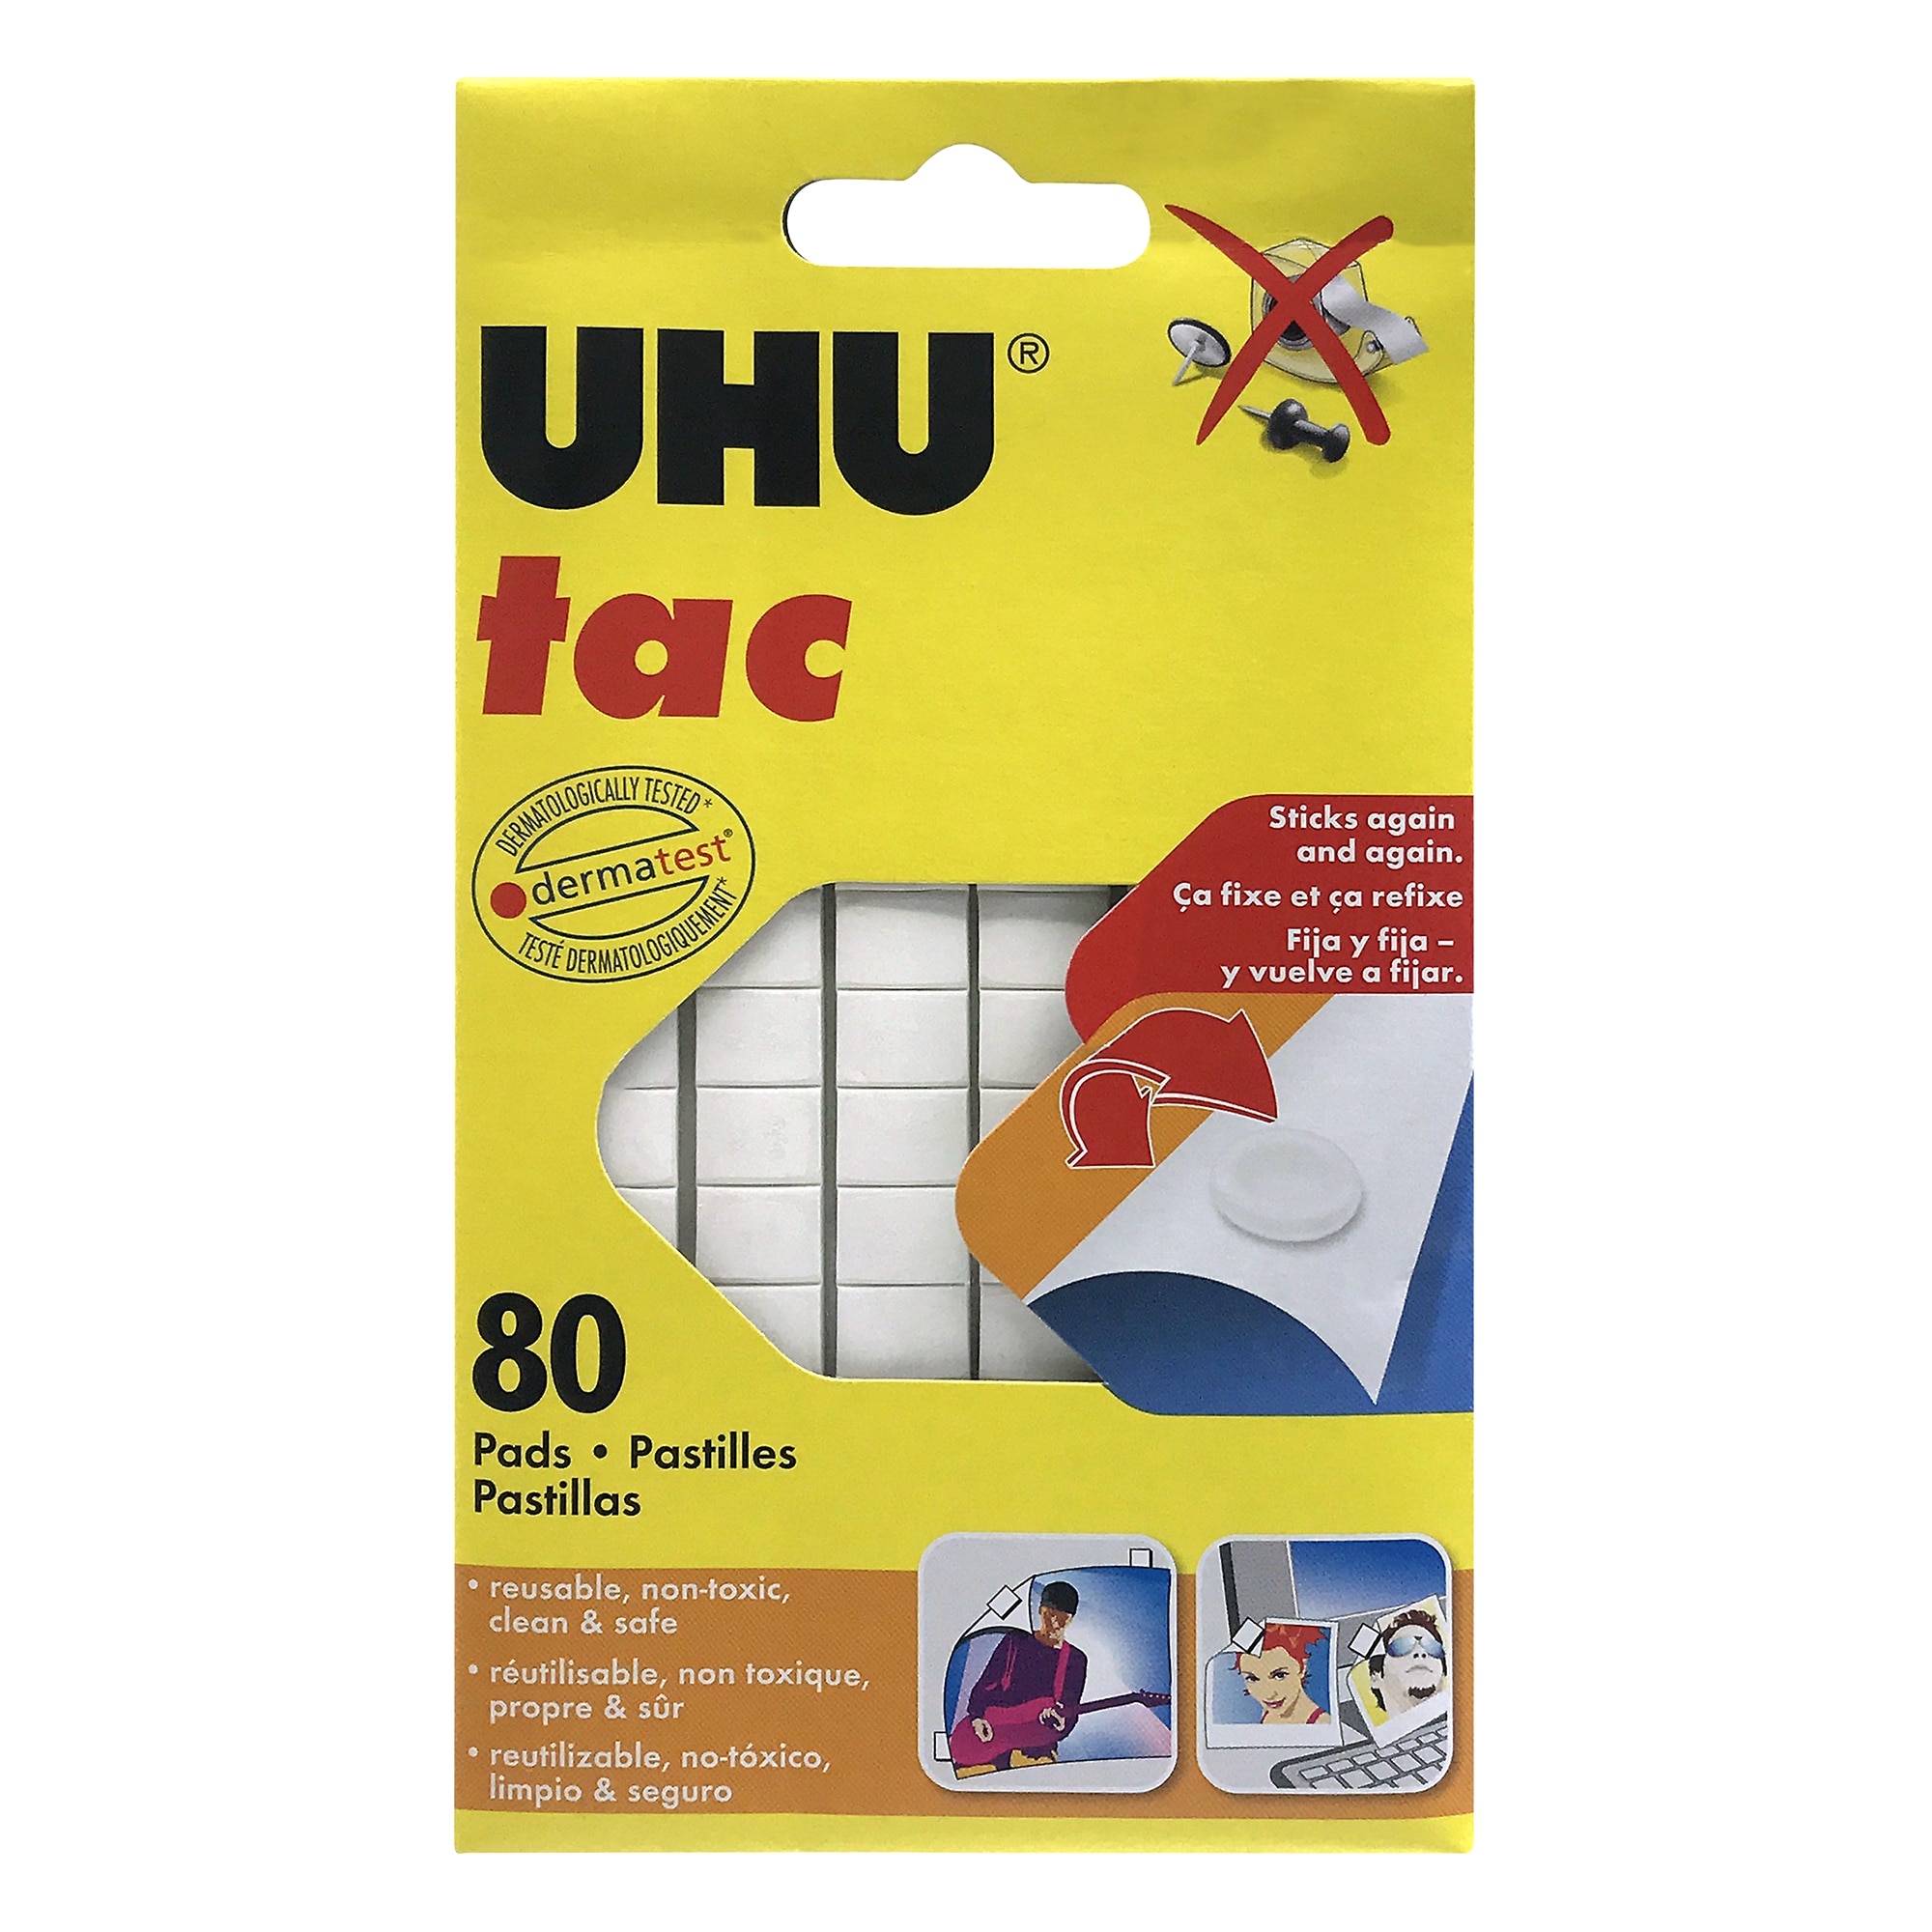 Uhu Tac Removable Adhesive